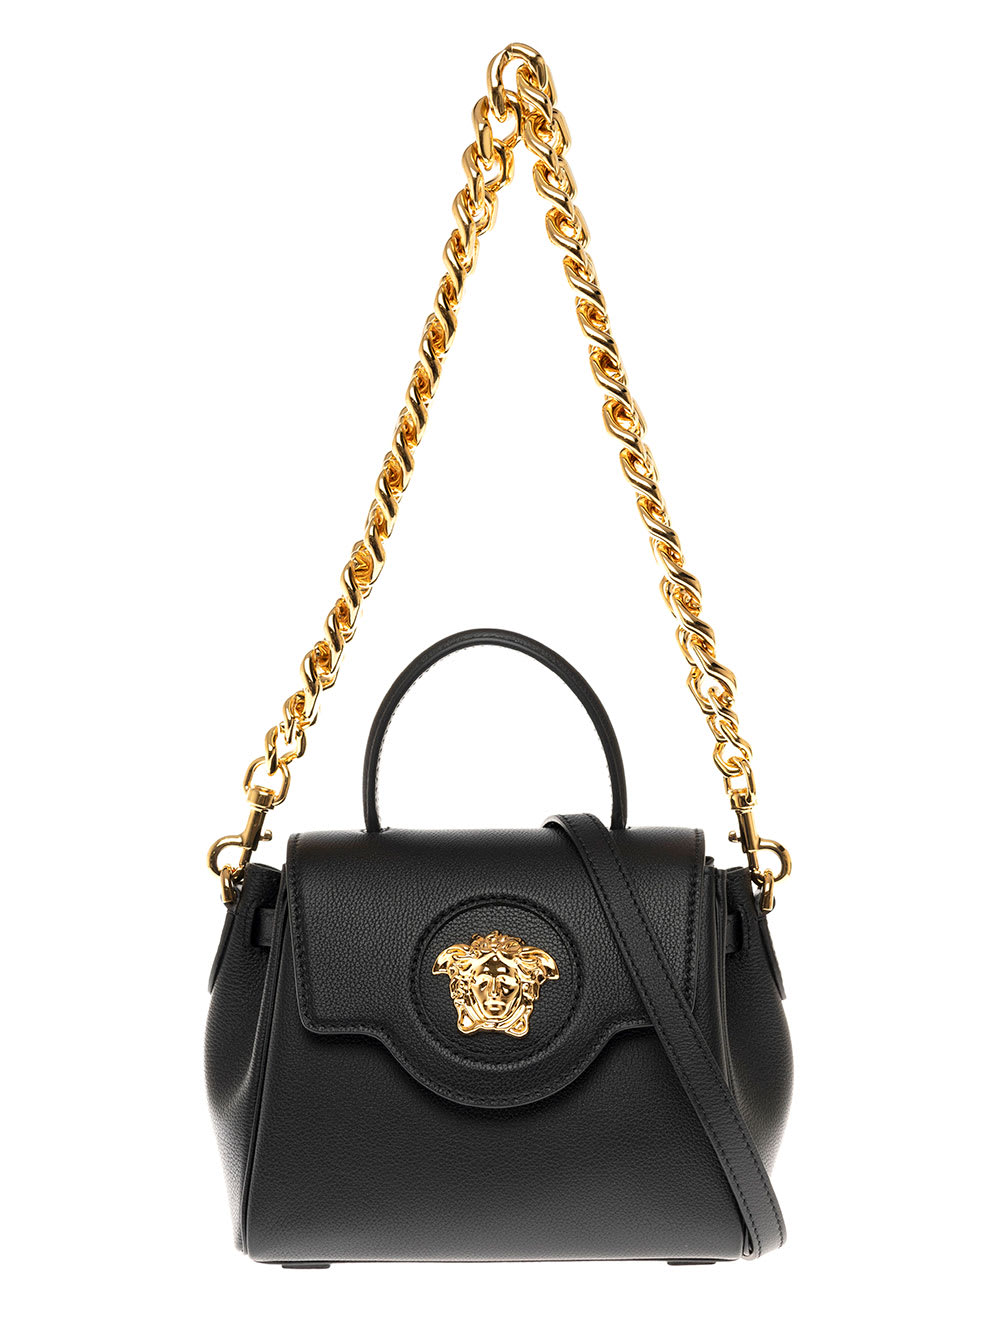 Versace La Medusa Black Leather Handbag